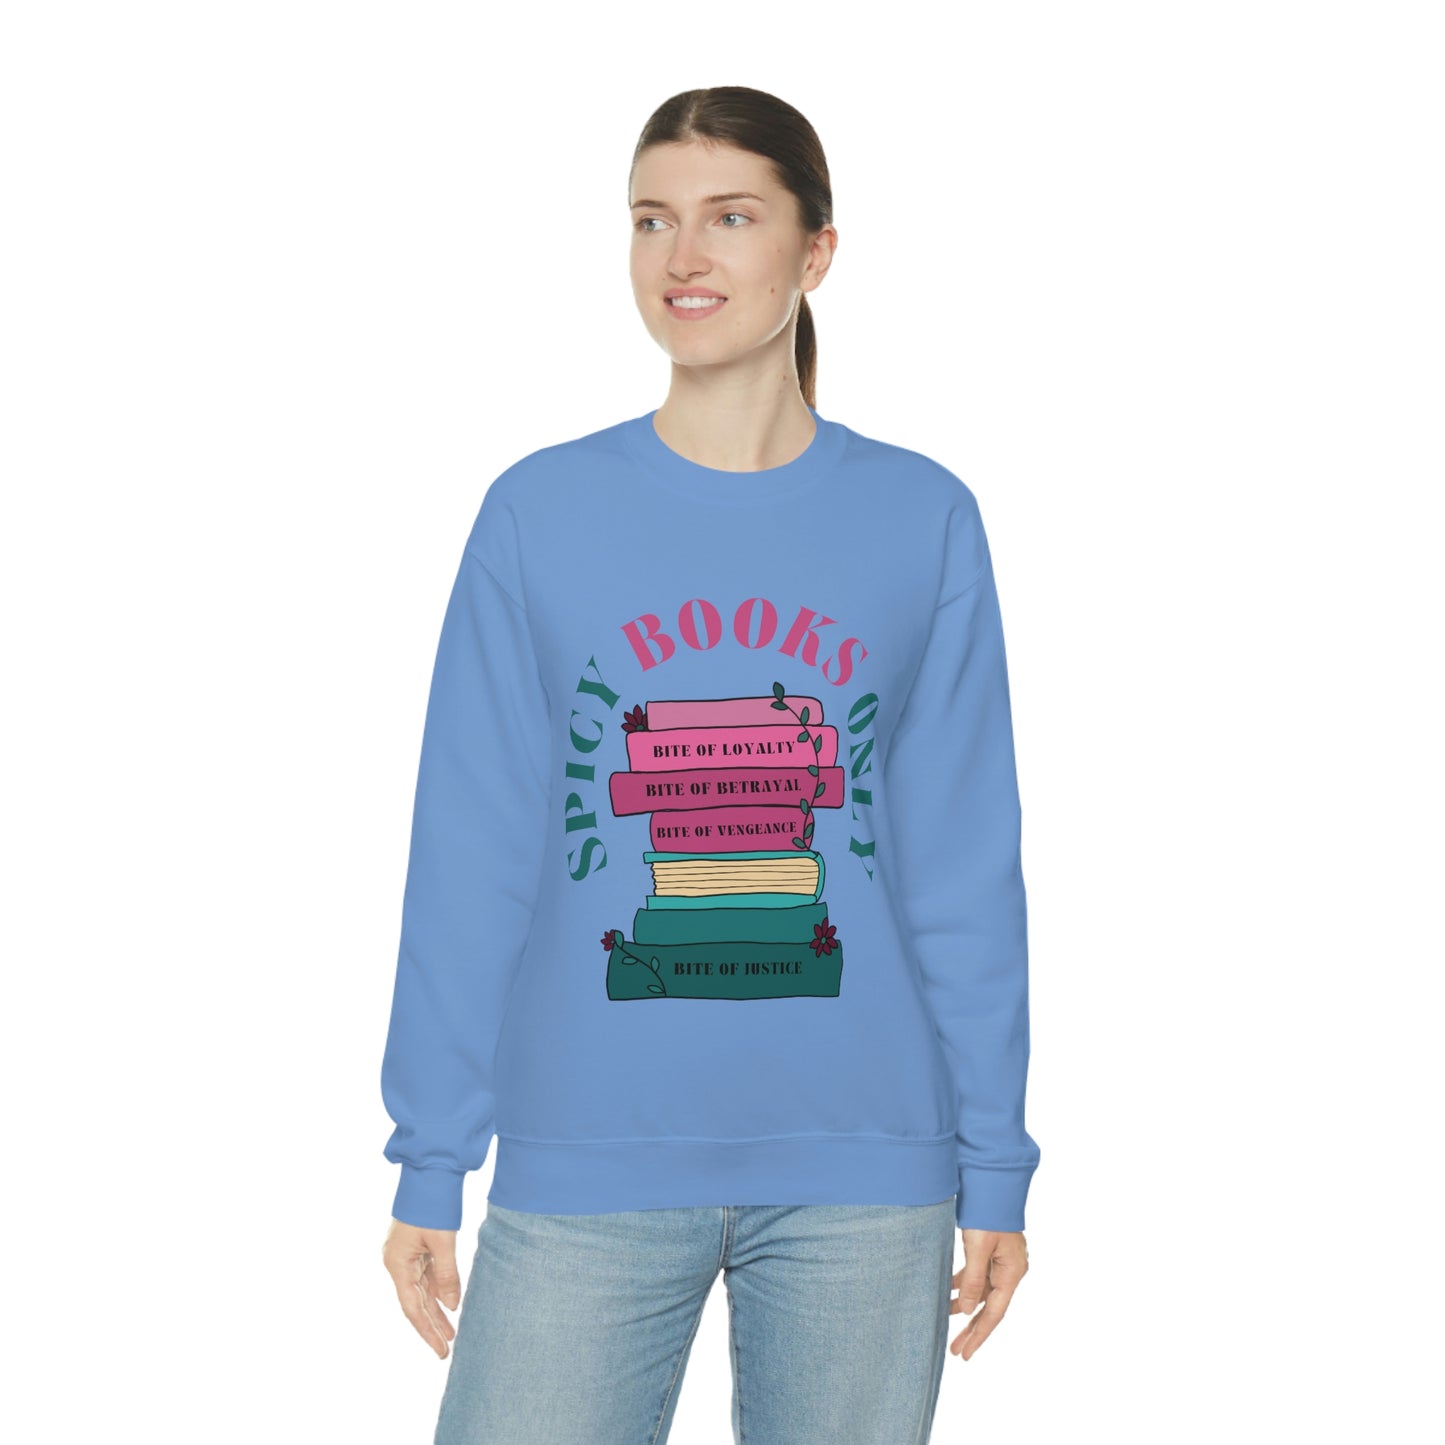 Smutty Books Only Crewneck Sweatshirt